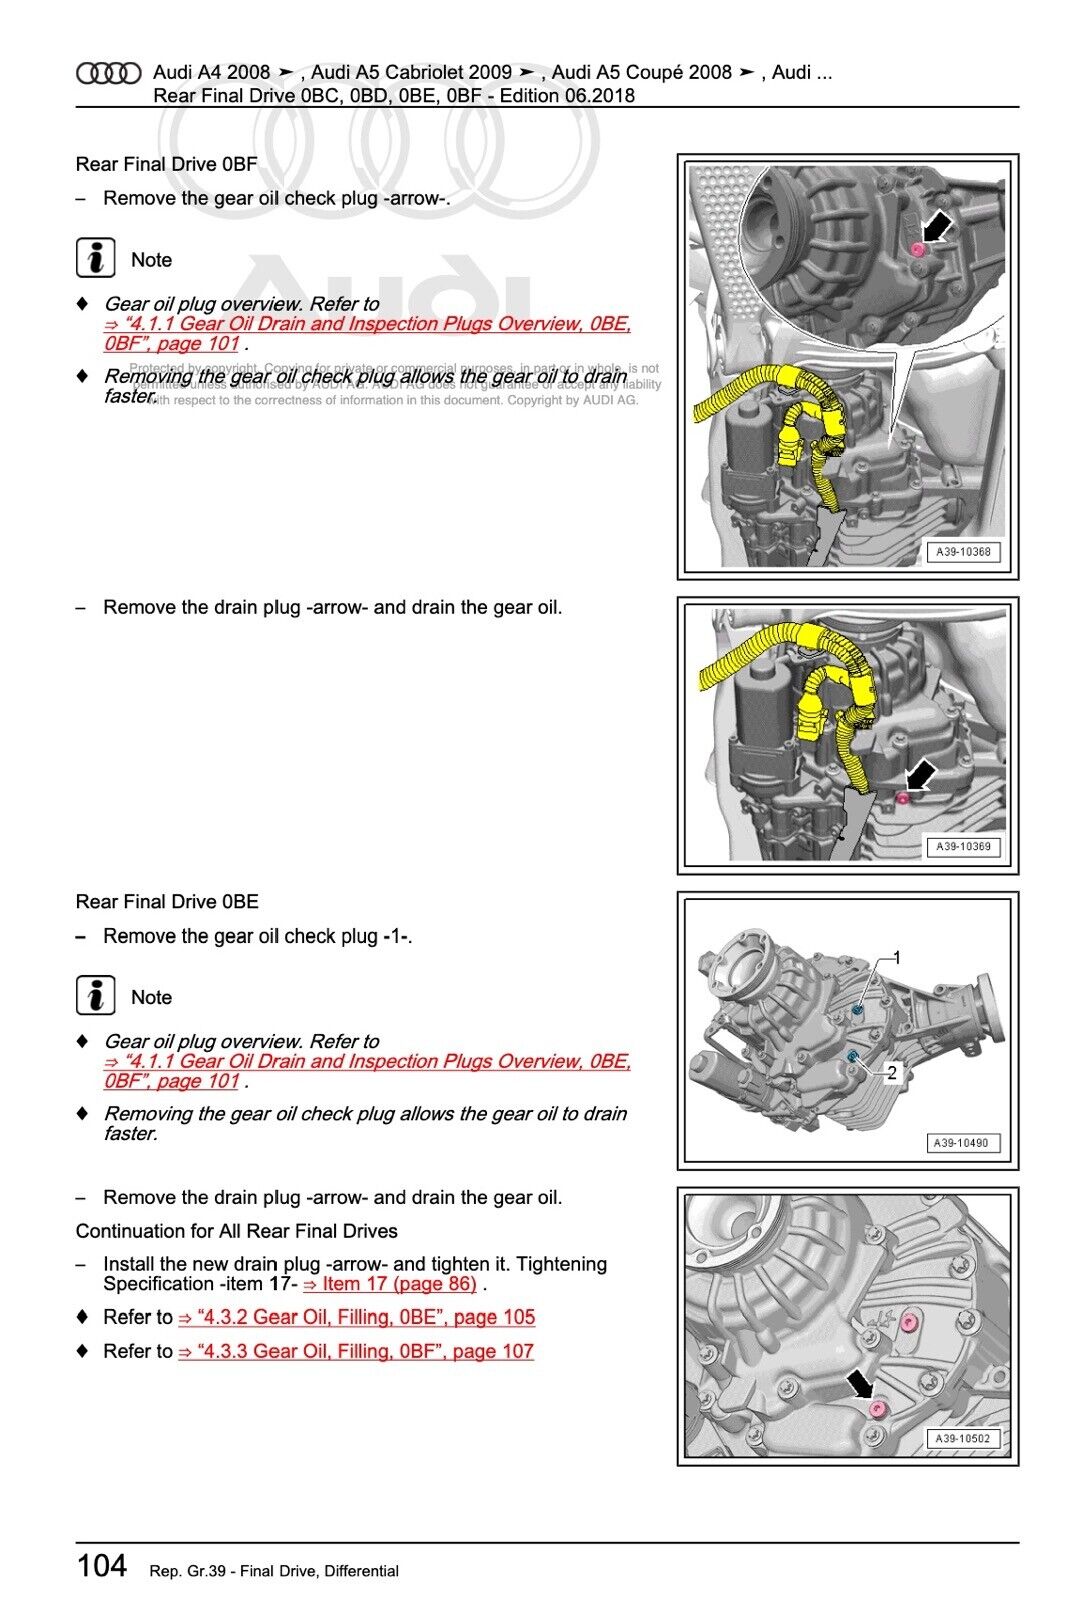 Audi Q5 (2008-2016) repair manual